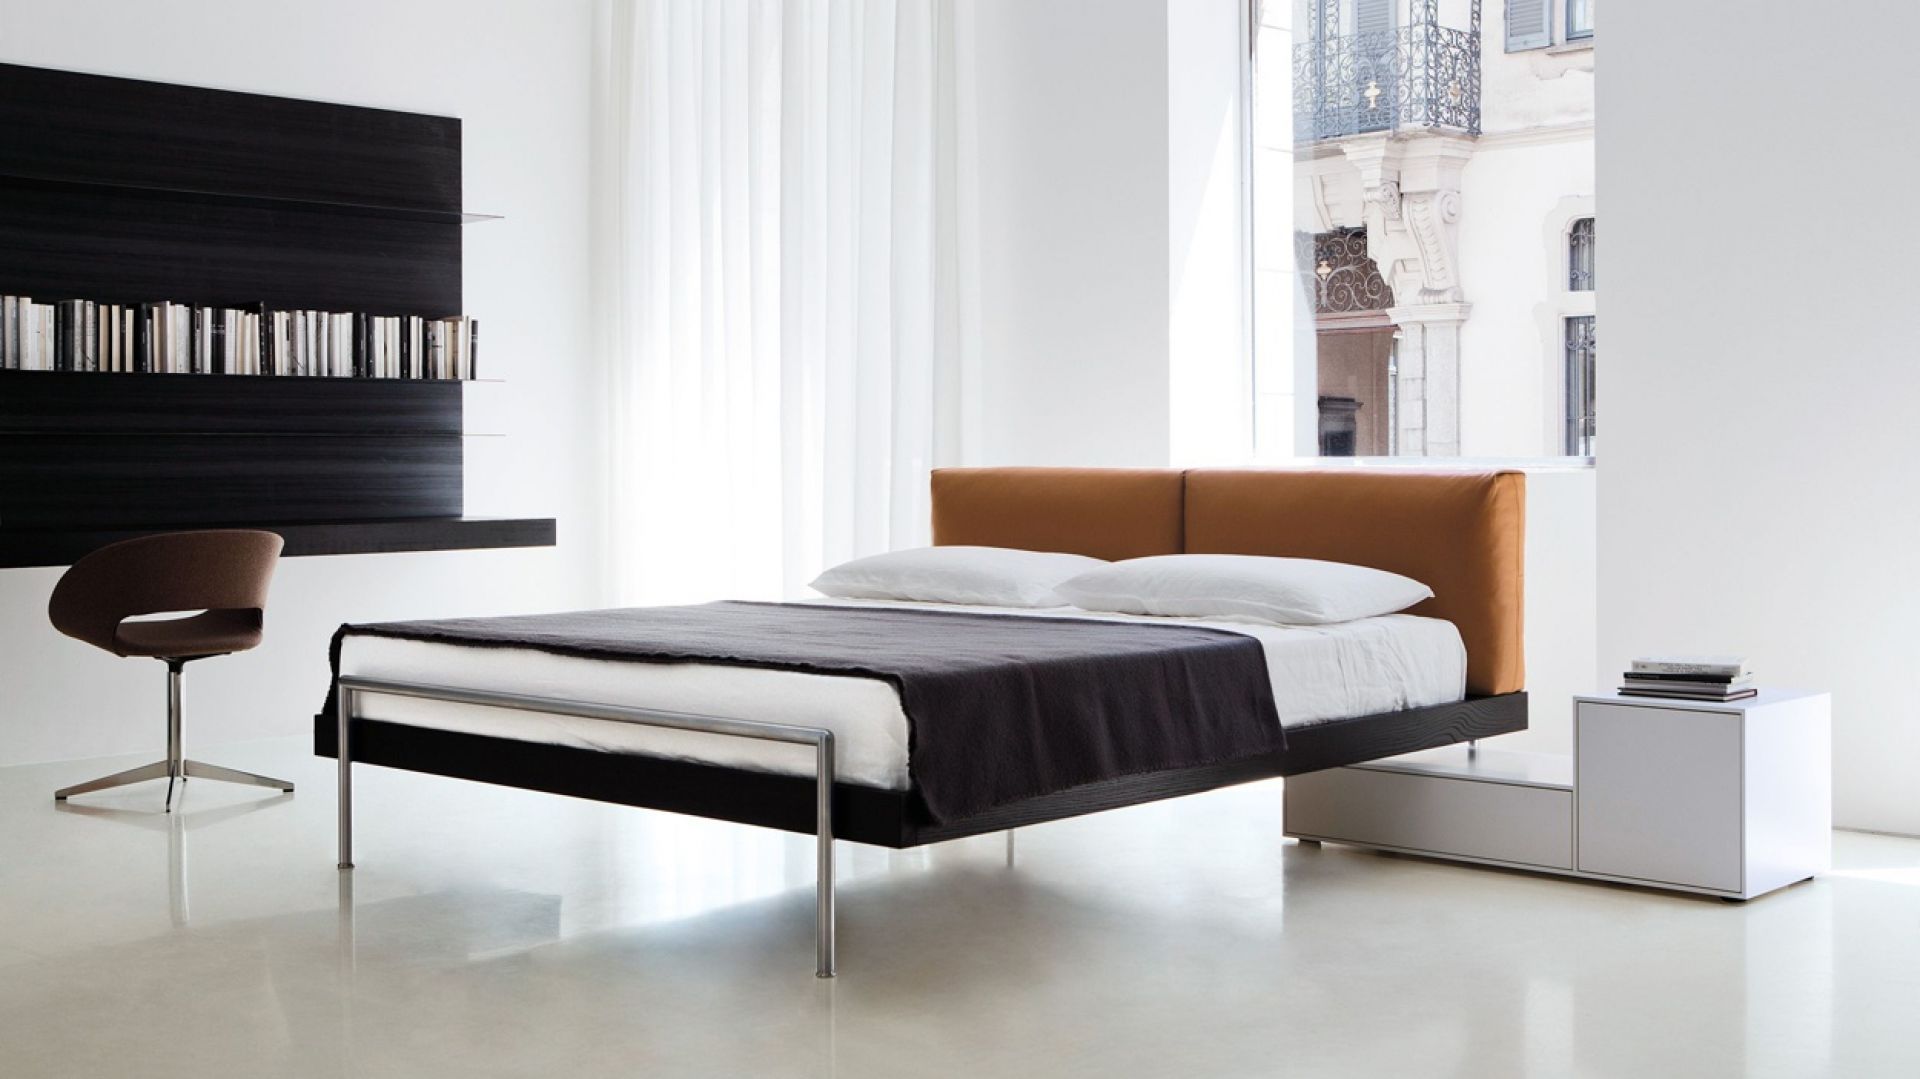 Supermodne, nowoczesne łóżka. Oto oferta z Włoch i nie tylko!